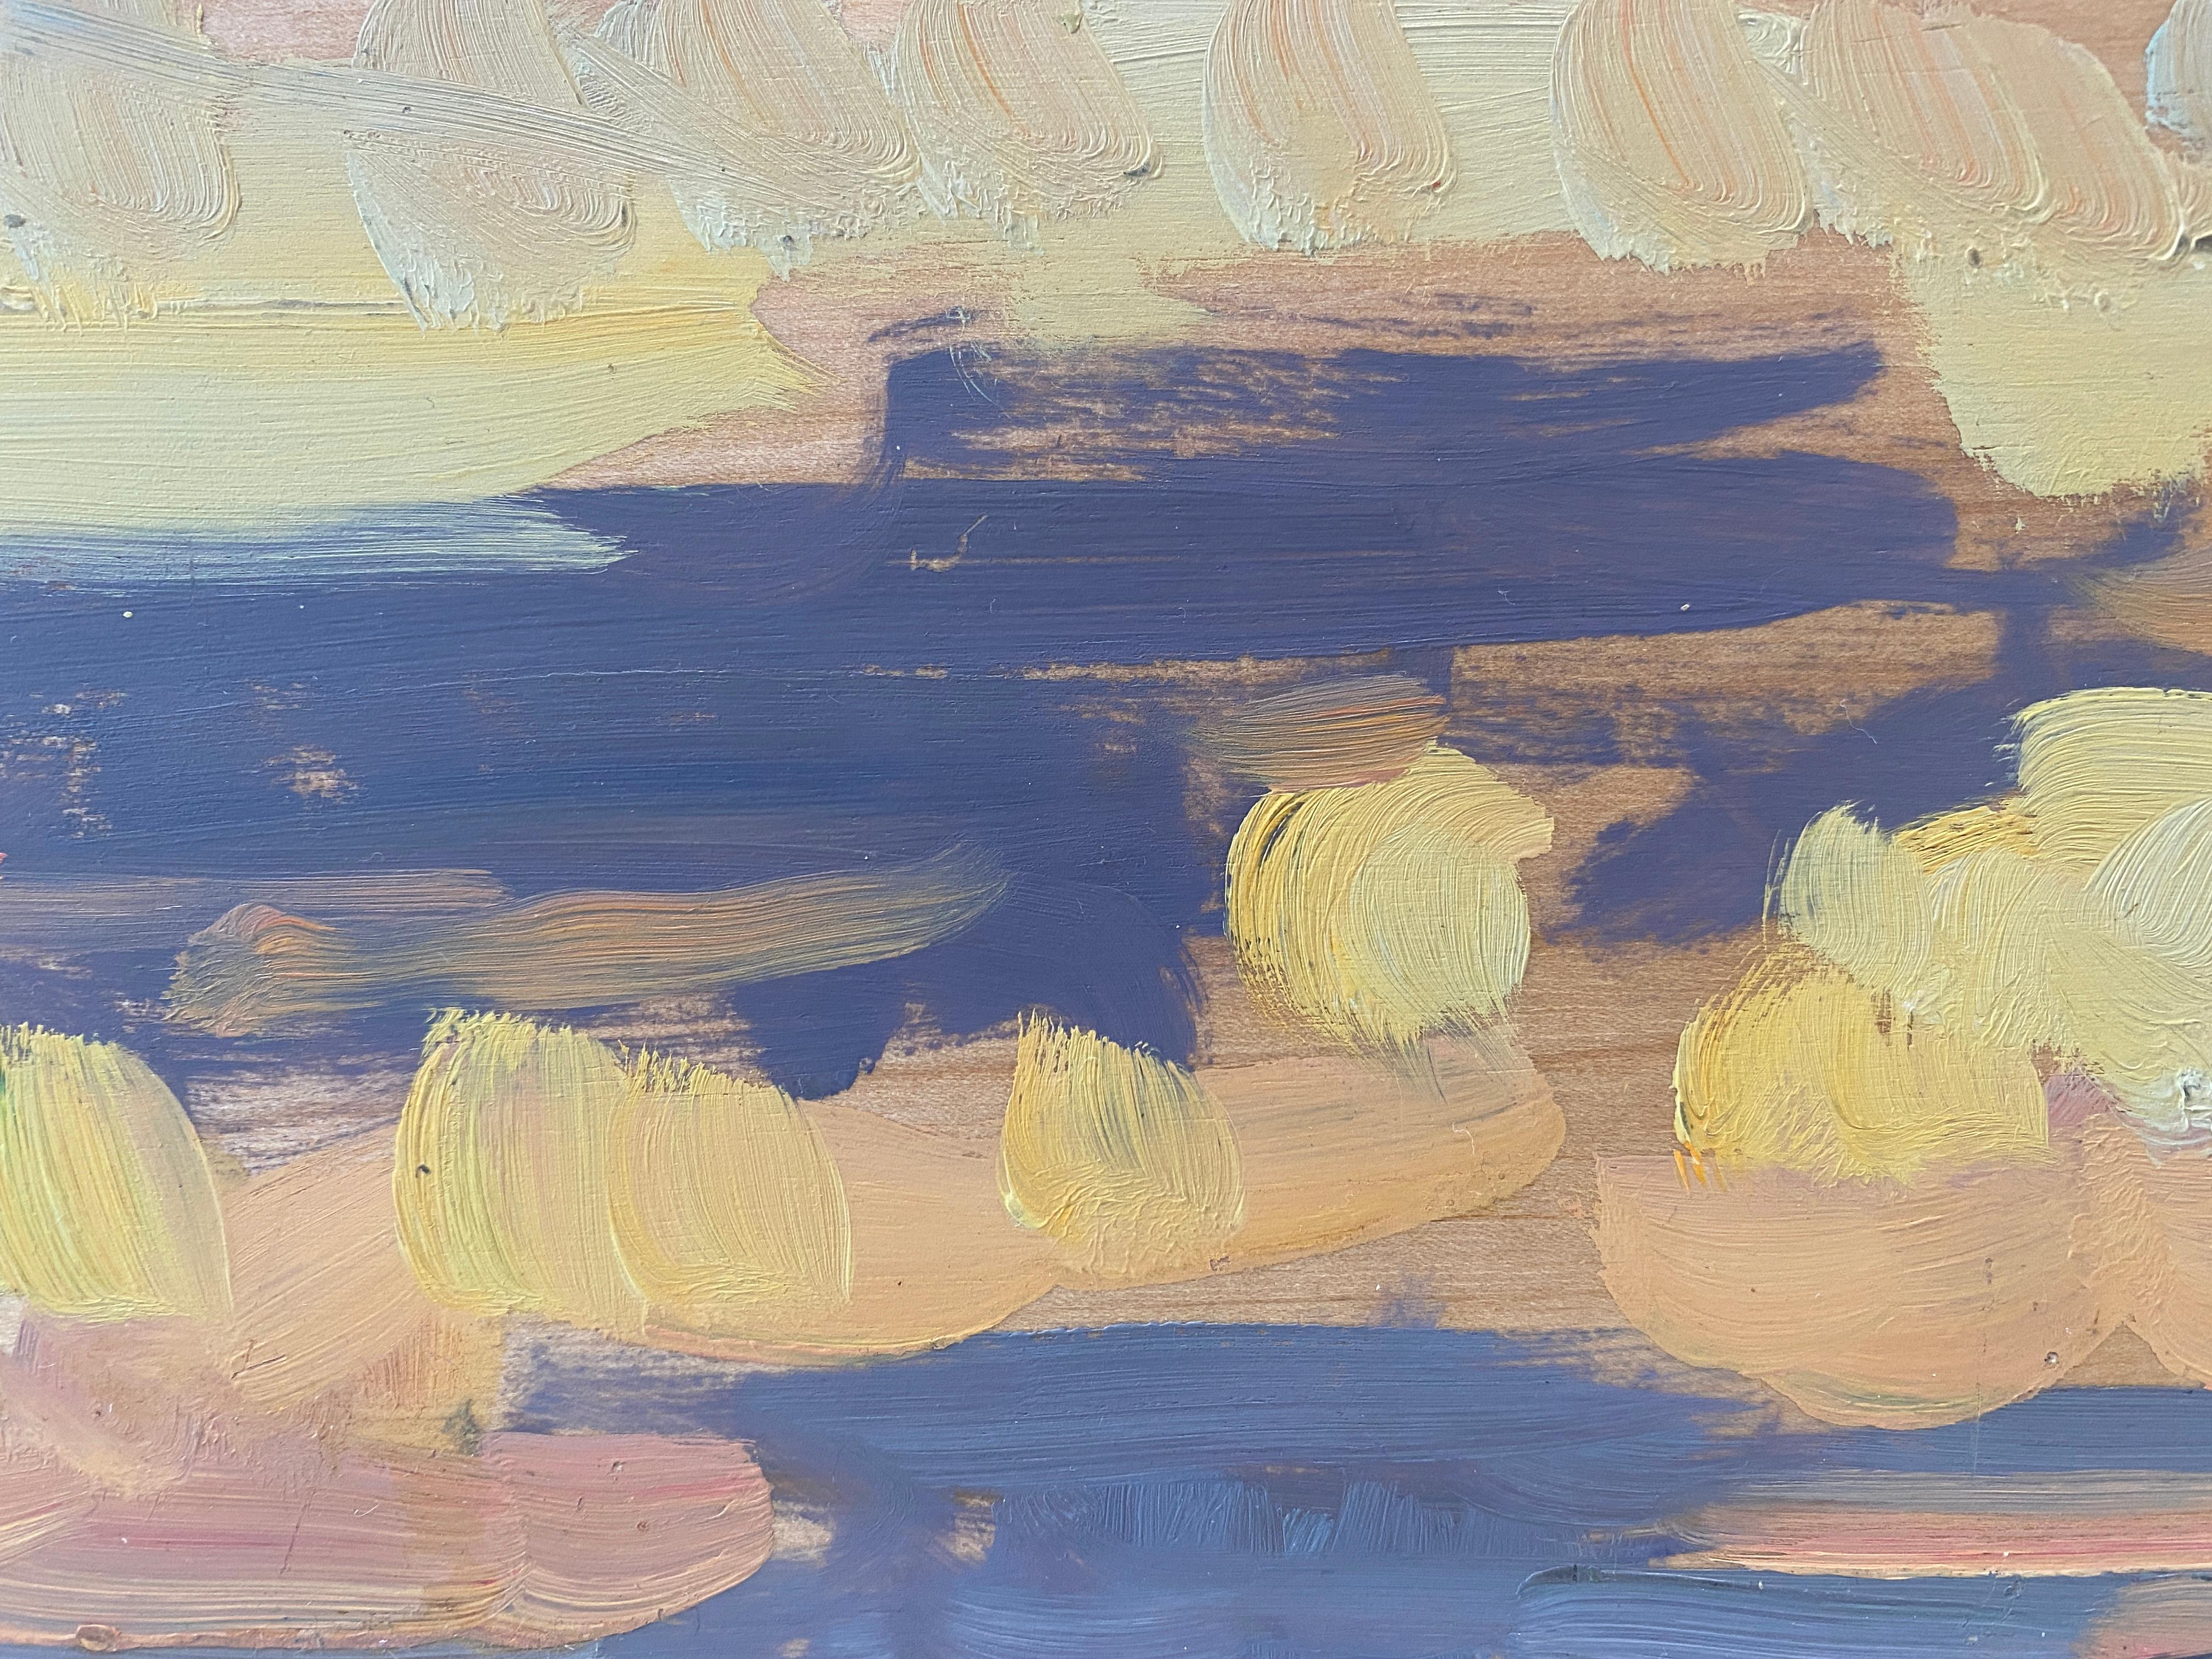 Peint en plein air à Sag Harbor, NY. Une plage locale préférée pour observer le coucher de soleil sur la baie de Noyac. Peint sur un panneau de bois avec des coups de pinceau libres, une peinture impressionniste presque abstraite. 

Ben Fenske (né